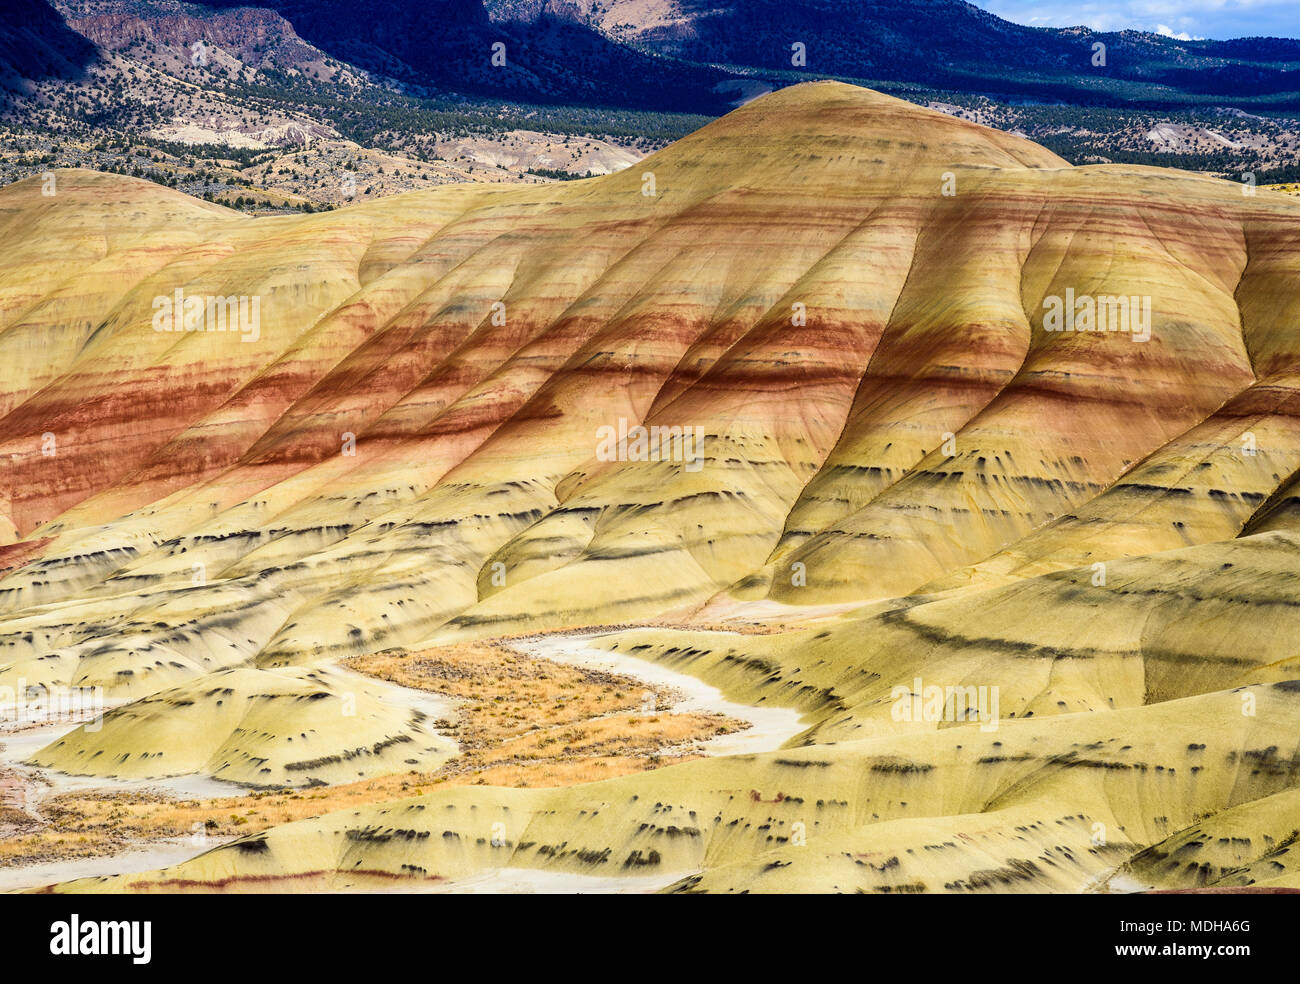 Strati colorati di minerali sono esposti presso la John Day Fossil Beds National Monument; Mitchell, Oregon, Stati Uniti d'America Foto Stock